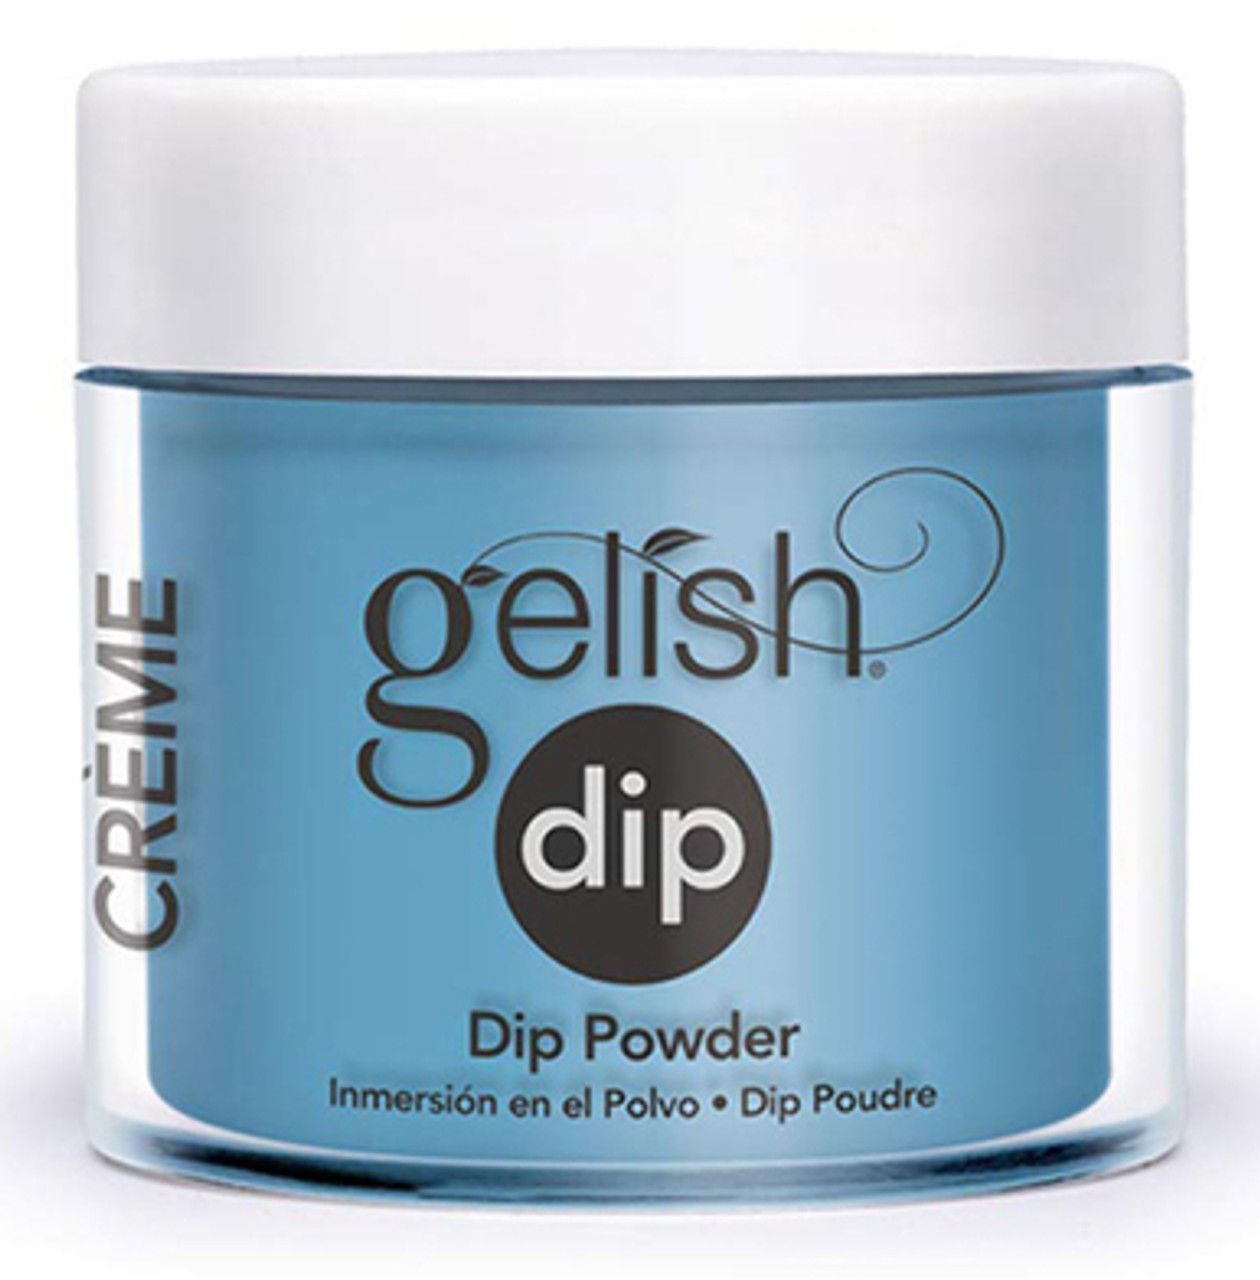 Gelish Dip Powder West Coast Cool - 0.8 oz / 23 g